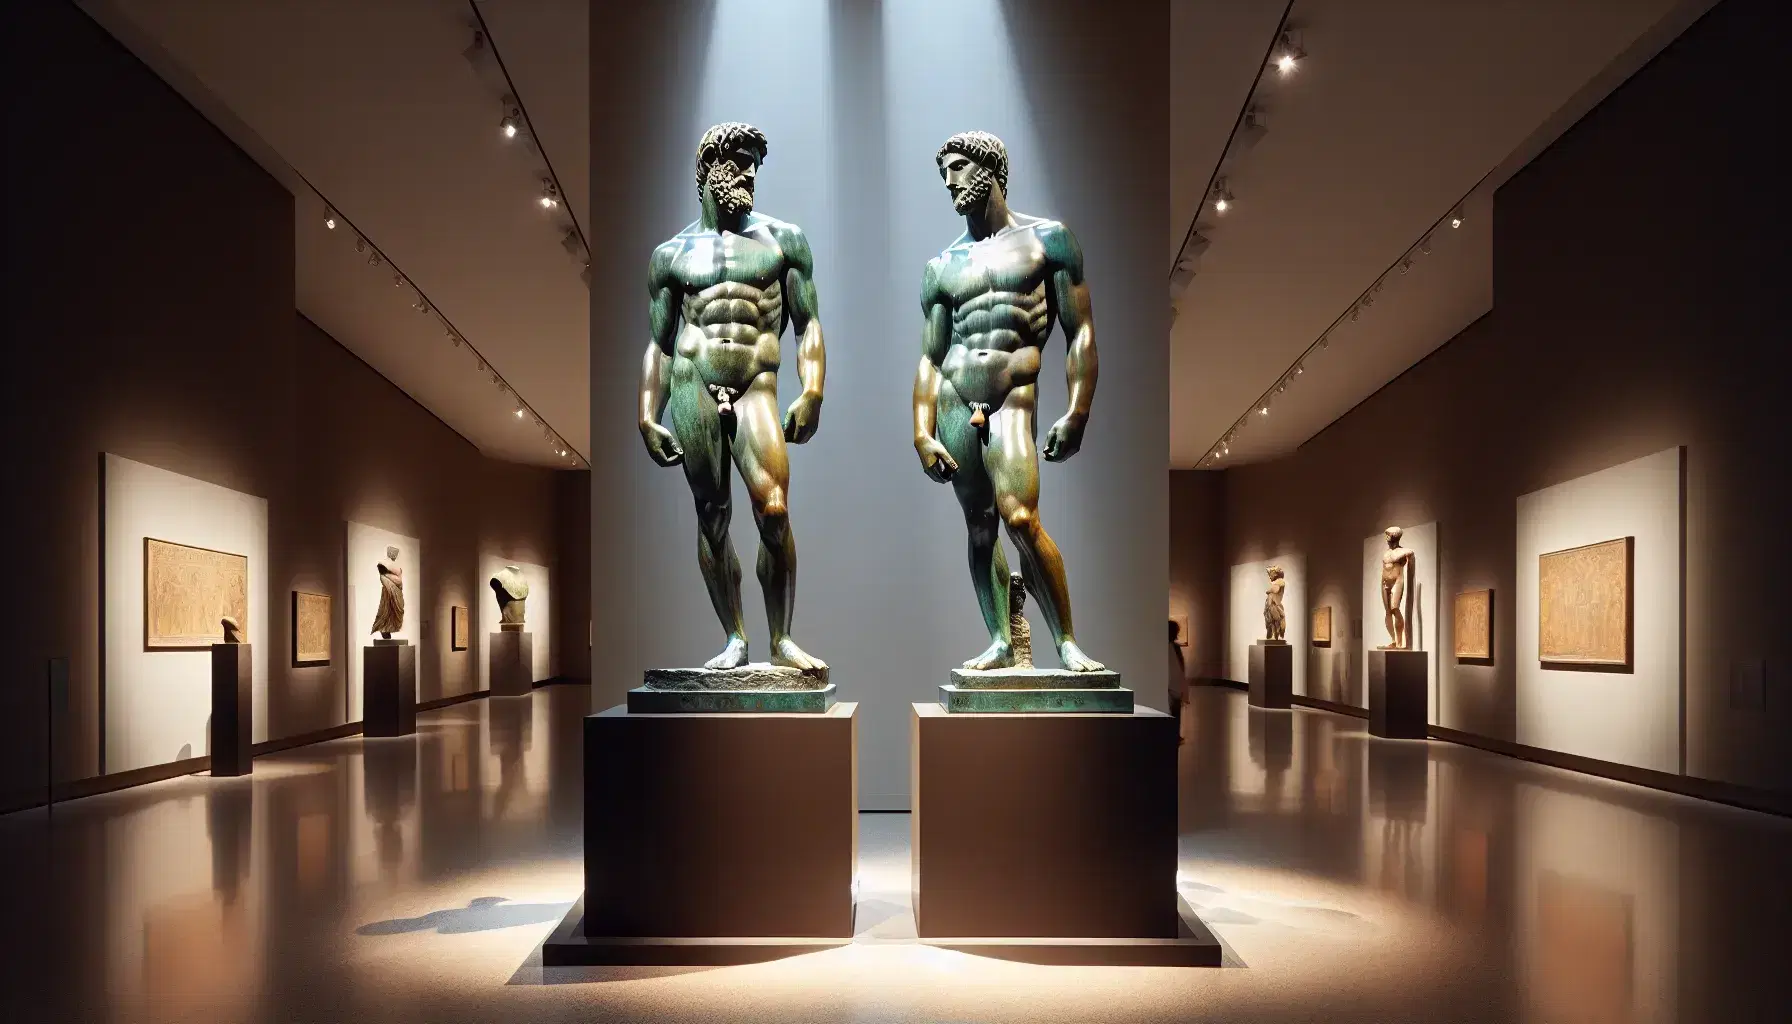 Bronzi di Riace esposti in museo, statue bronzee a grandezza naturale di guerrieri greci antichi con dettagli muscolari evidenziati da luci soffuse.